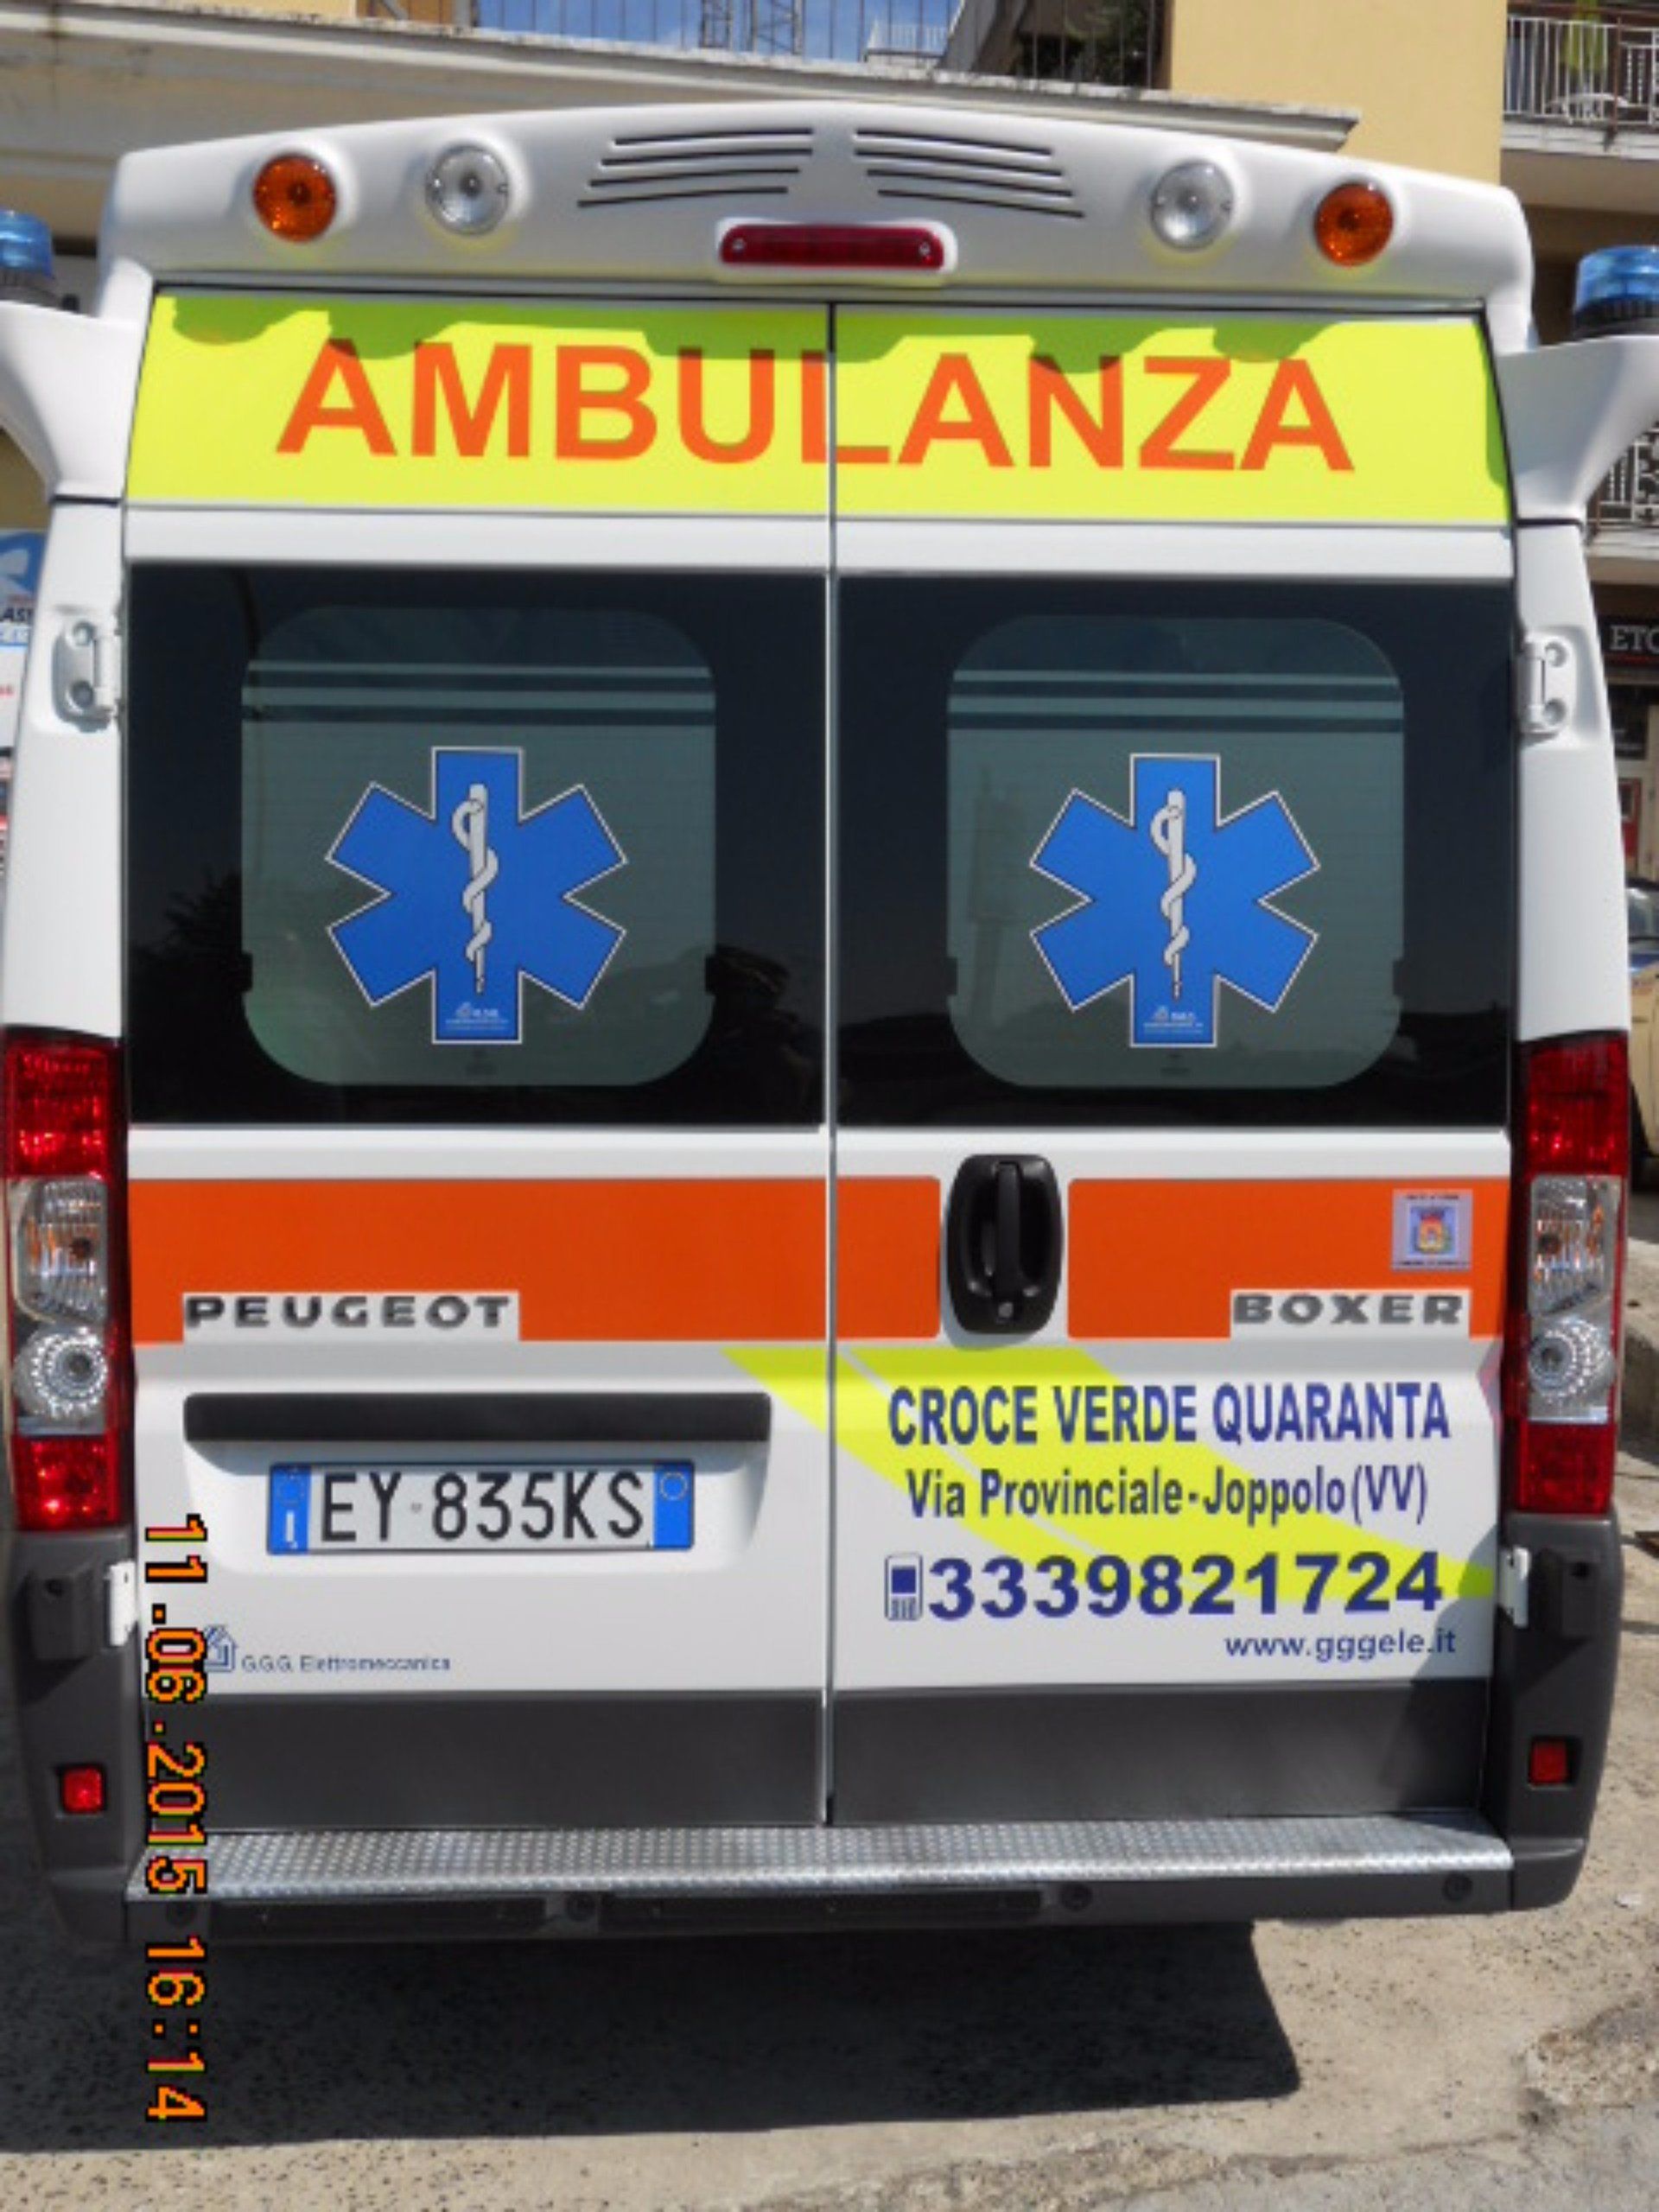 Vista posteriore dell’ambulanza